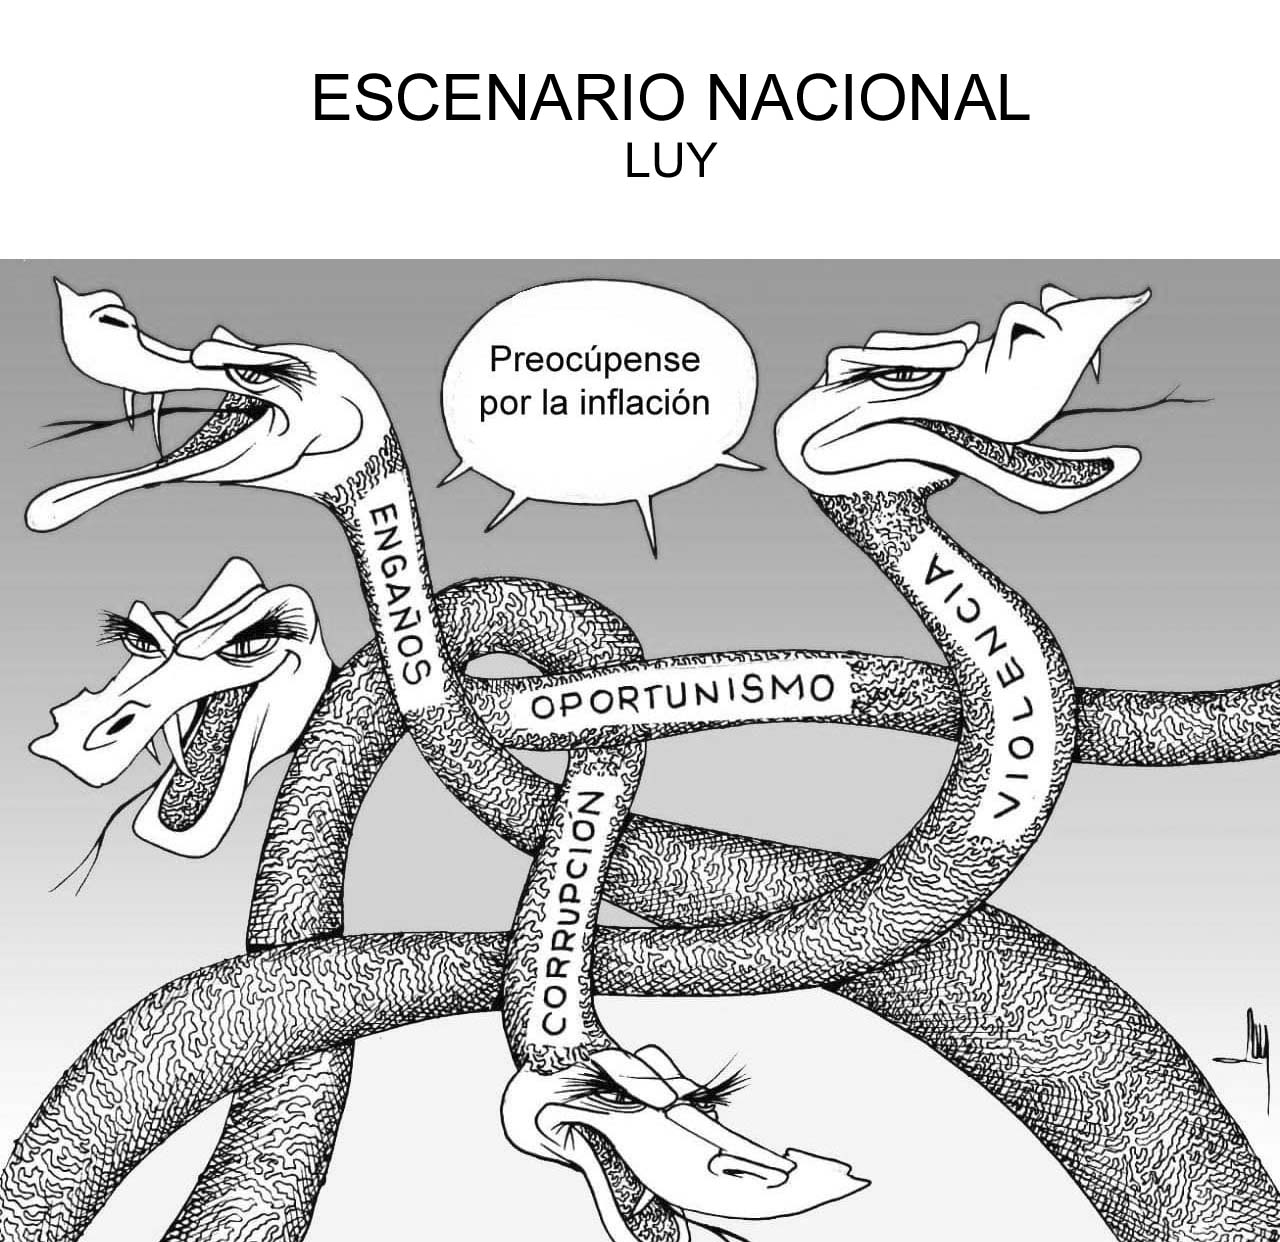 ESCENARIO NACIONAL-LUY